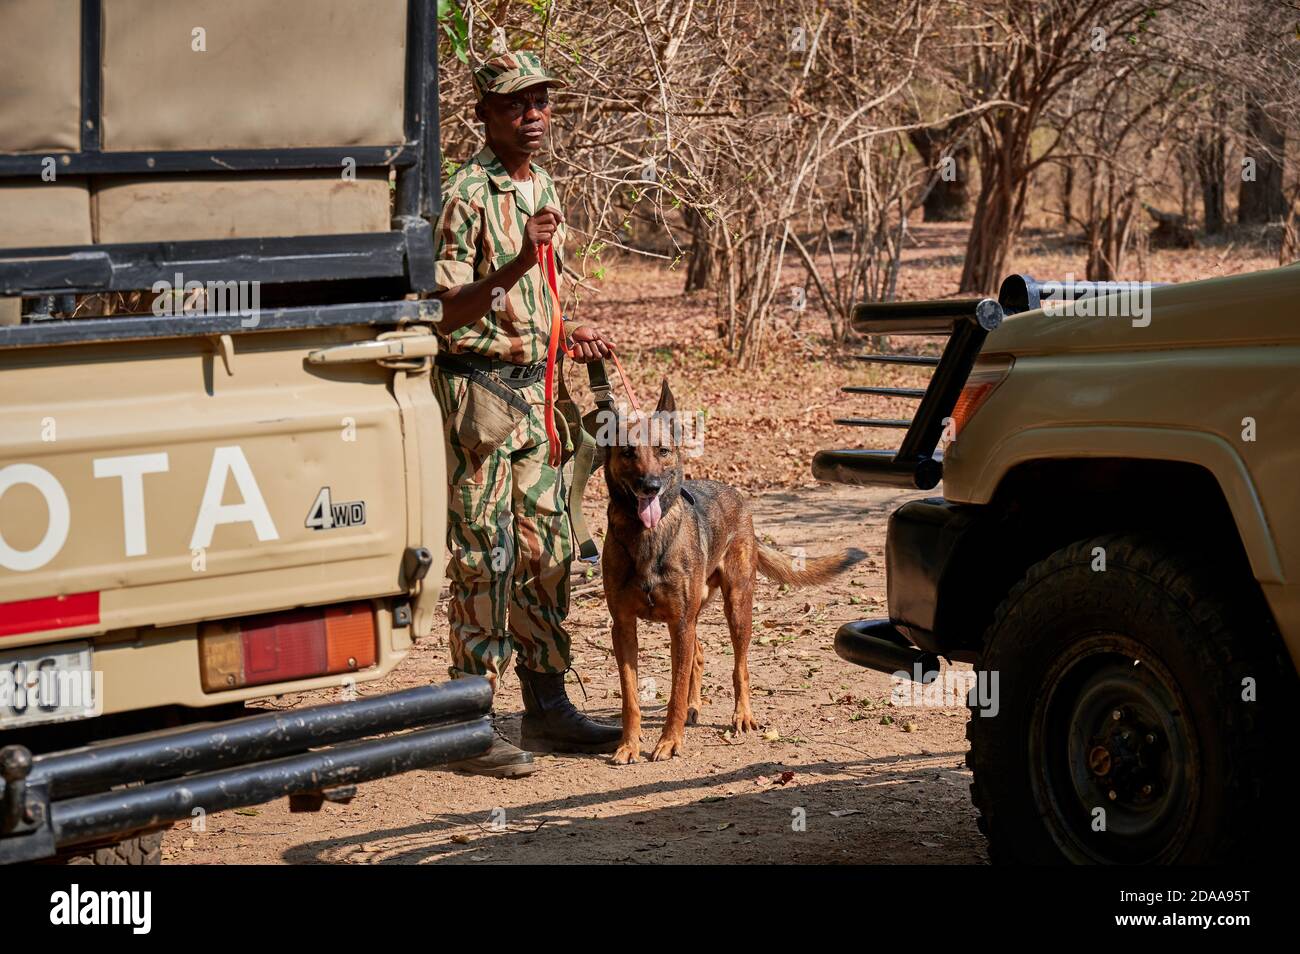 Dimostrazione di conservazione Sud Luangwa con cani anti-bracconaggio, K9 Detection Dogs Unit, South Luangwa National Park, Mfuwe, Zambia, Africa Foto Stock